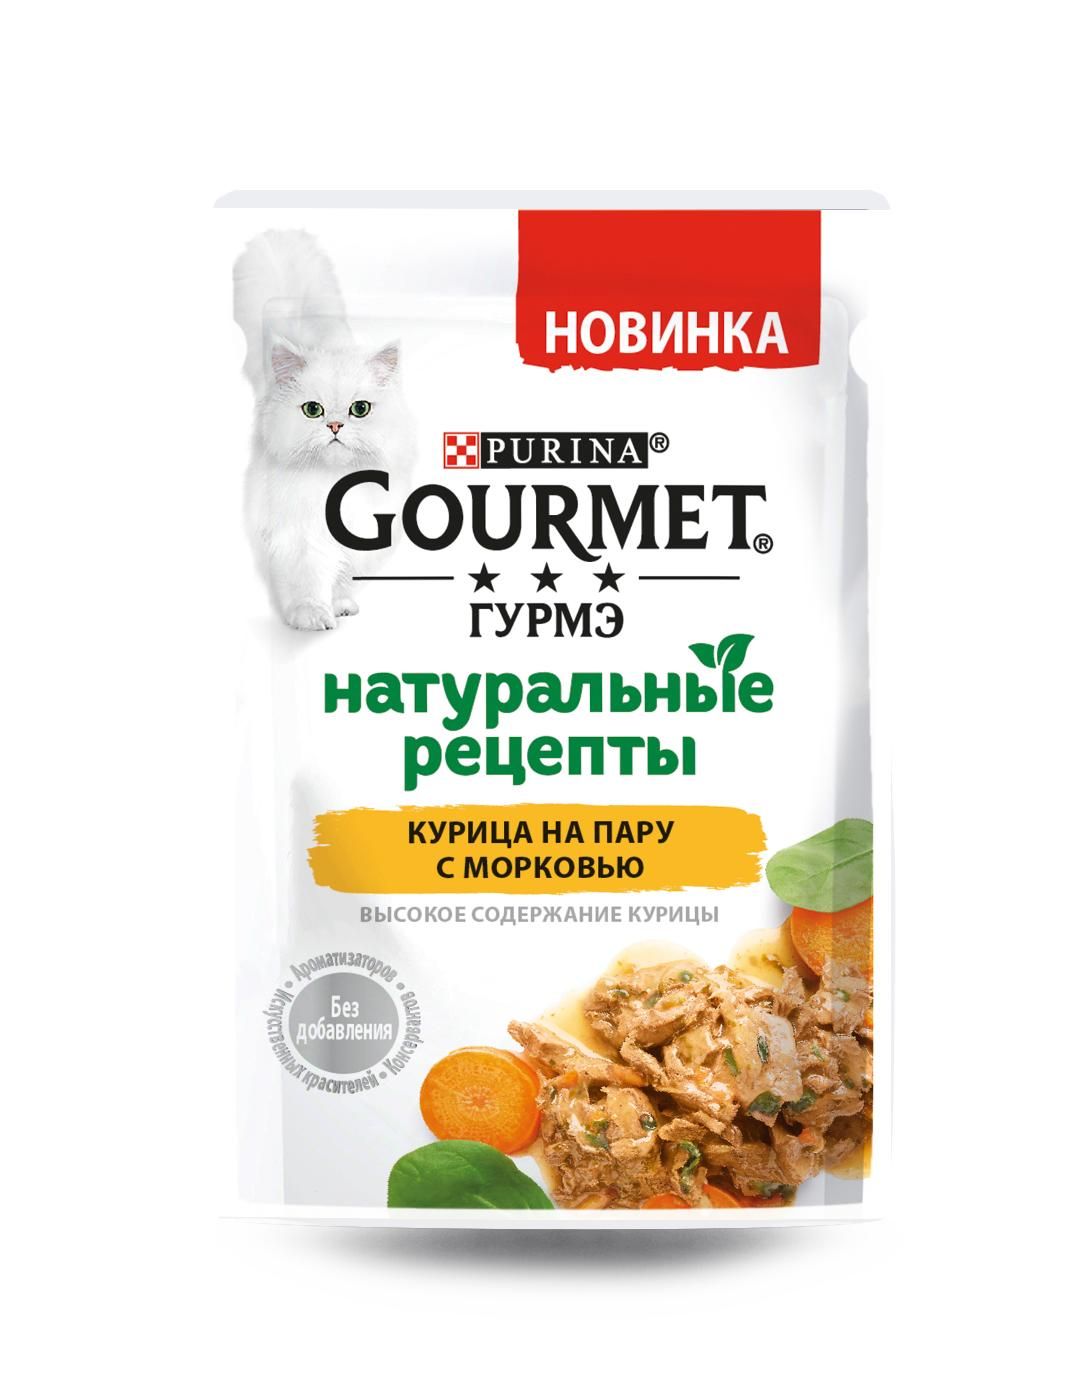 Гурме Натуральные рецепты 75гр - Курица/Морковь (Gourmet)